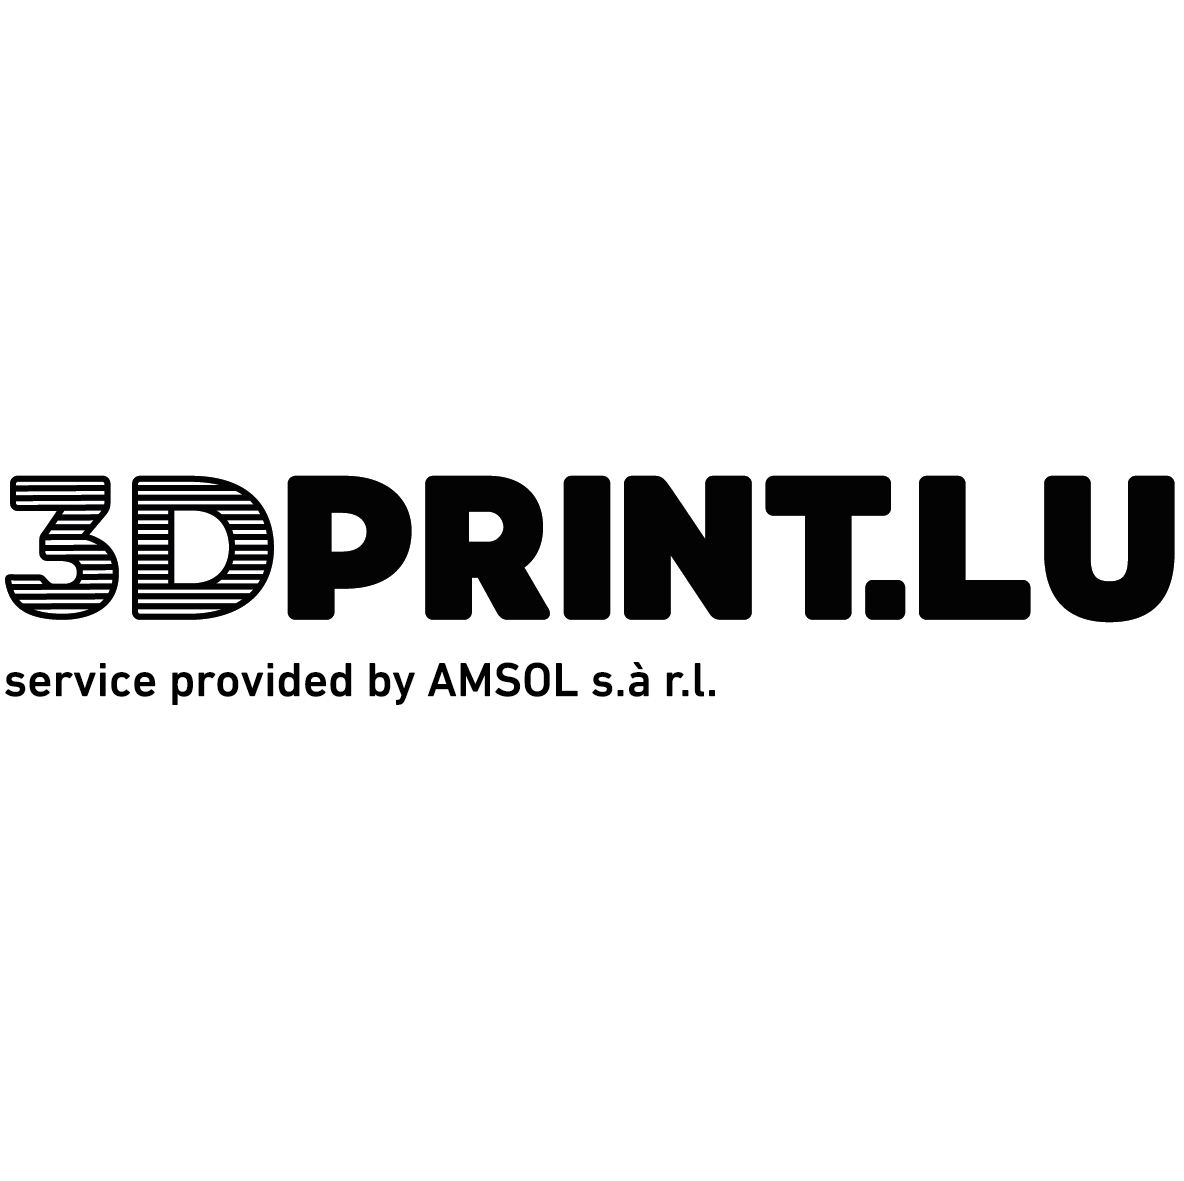 3dprint.lu logo